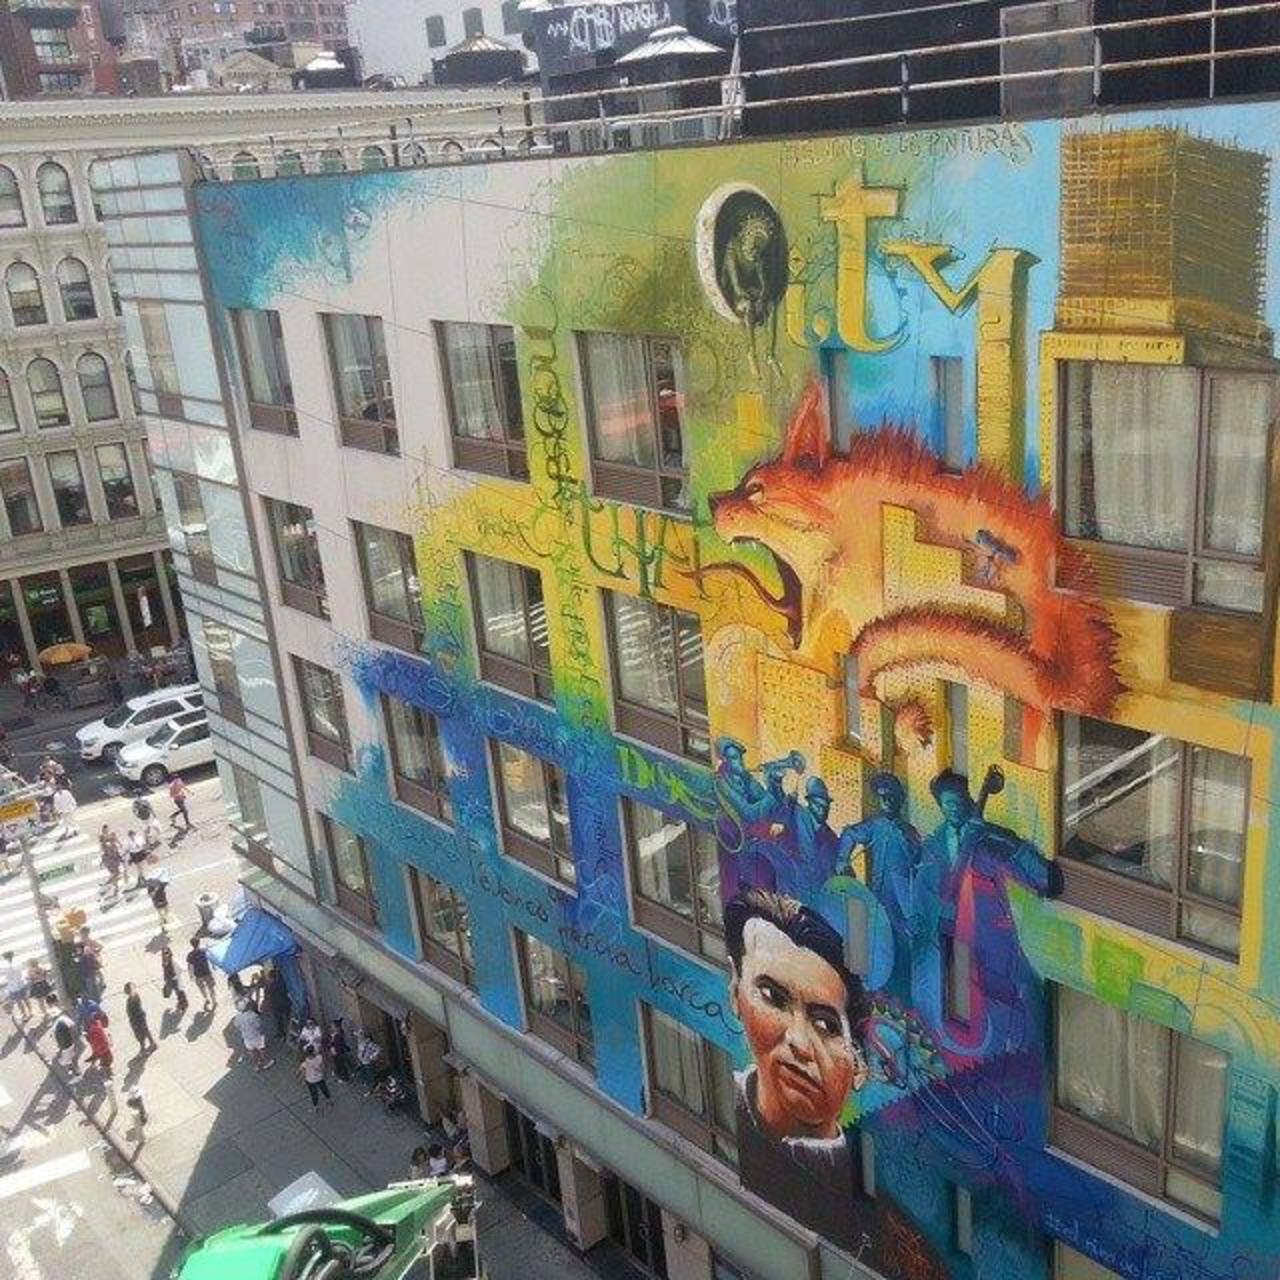 RT @granadaocio: El #Arte de @ninopinturas​ vuela alto y lleva a Federico #GarcíaLorca hasta #NYC #graffiti #streetart #NuevaYork #art http://t.co/zYQwMoEb2W